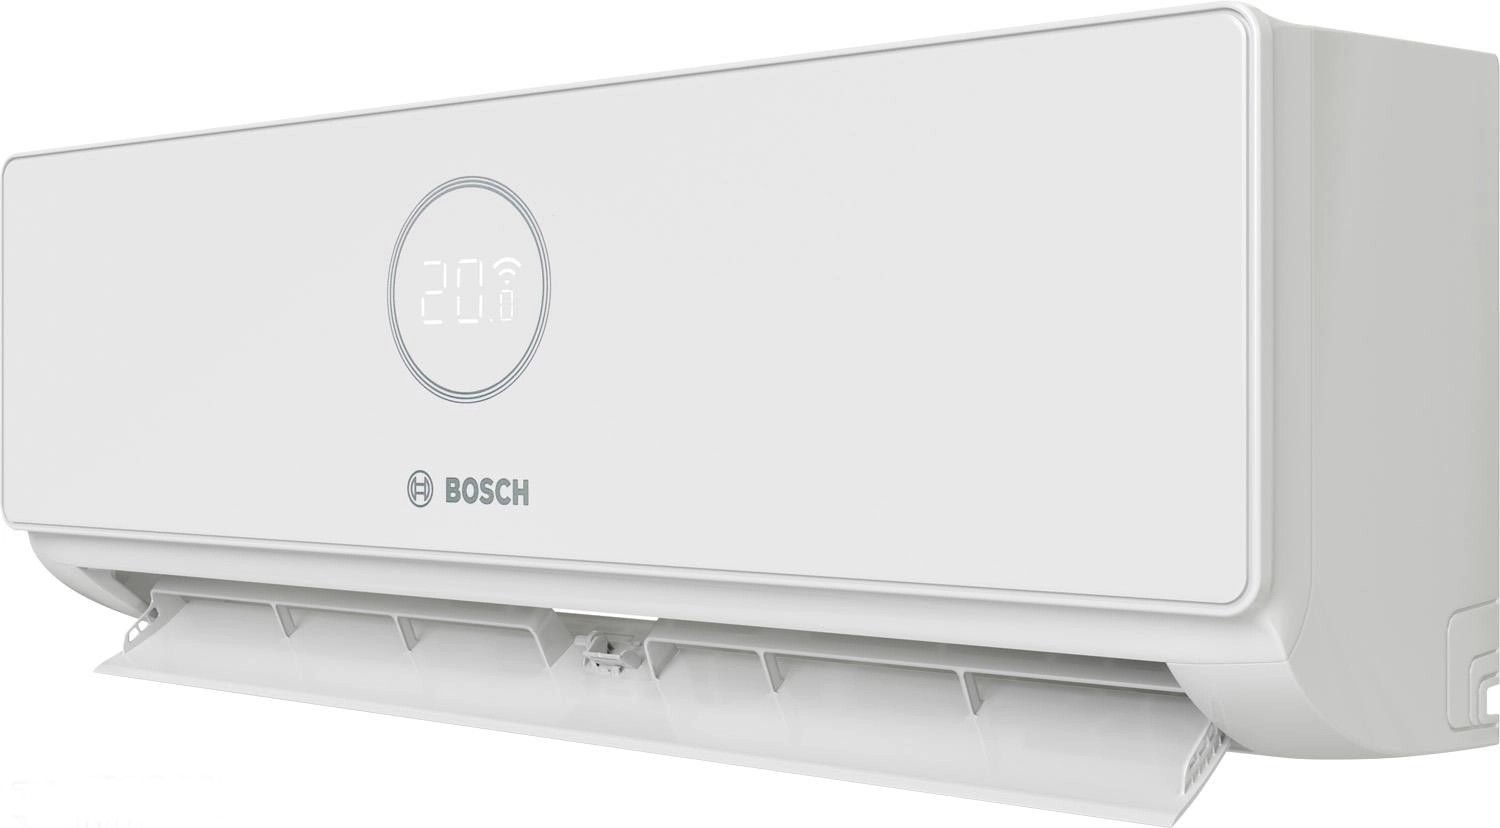 Внутренний блок мультисплит-системы Bosch CL3000iU W 26E 2,6 кВт отзывы - изображения 5